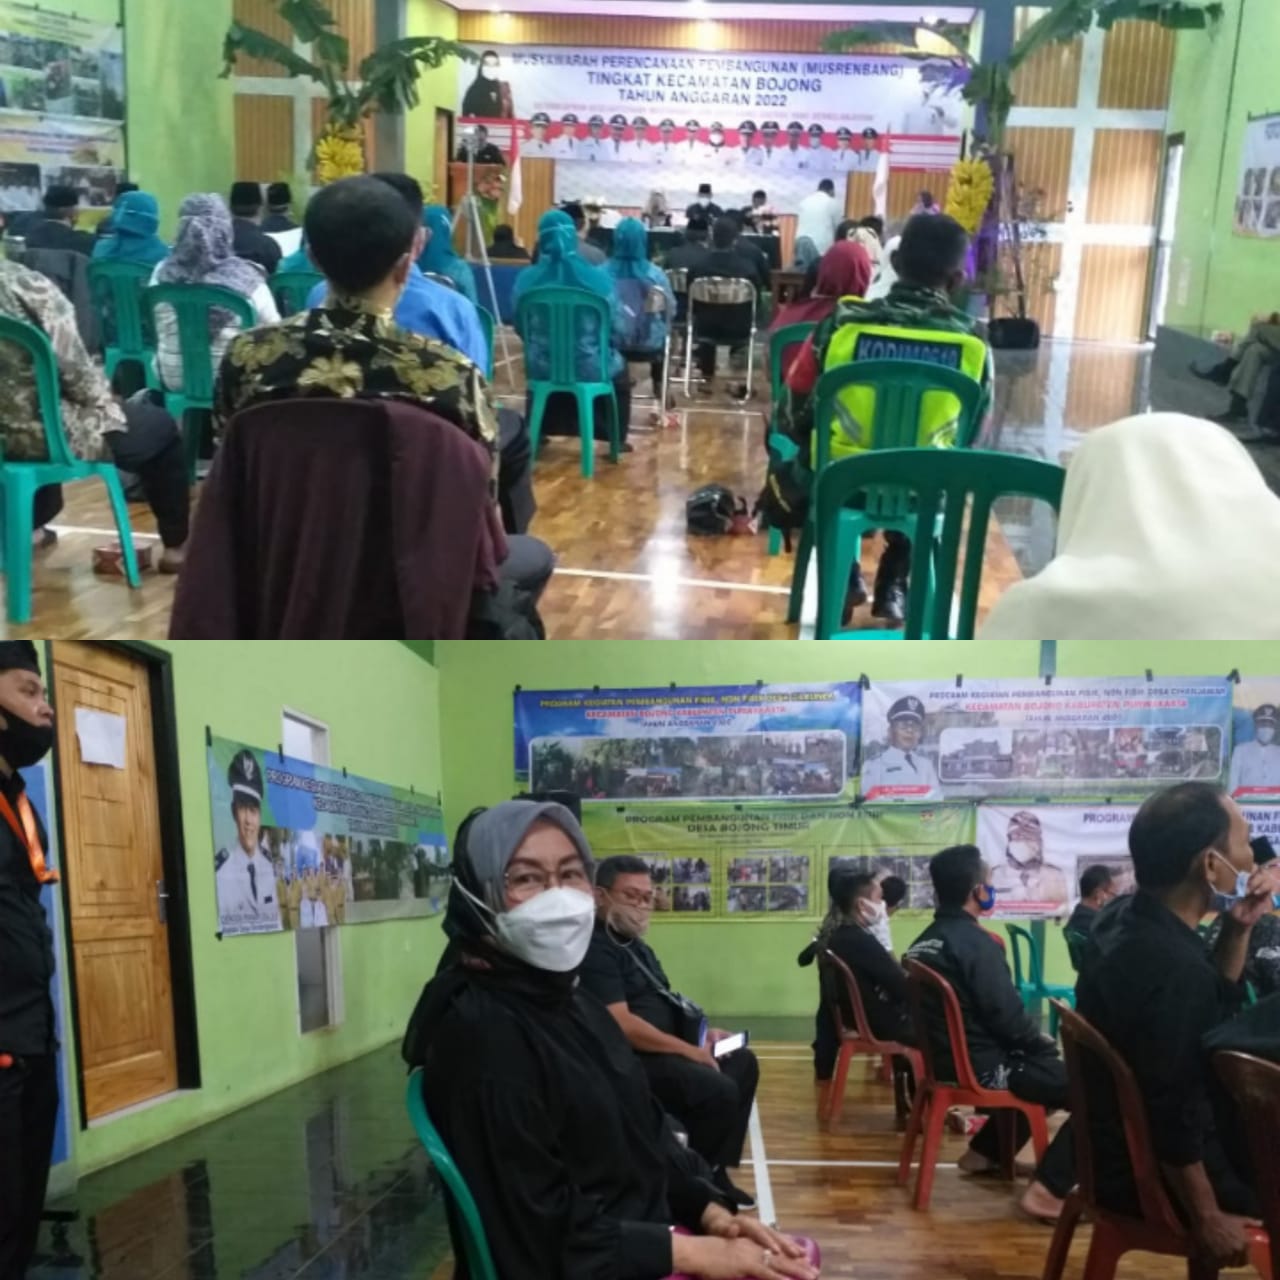 Rabu (10/02/21) Bidang Peeizinan mewakili DPMPTSP mengikuti kegiatan MUSRENBANG di Kecamatan Bojong